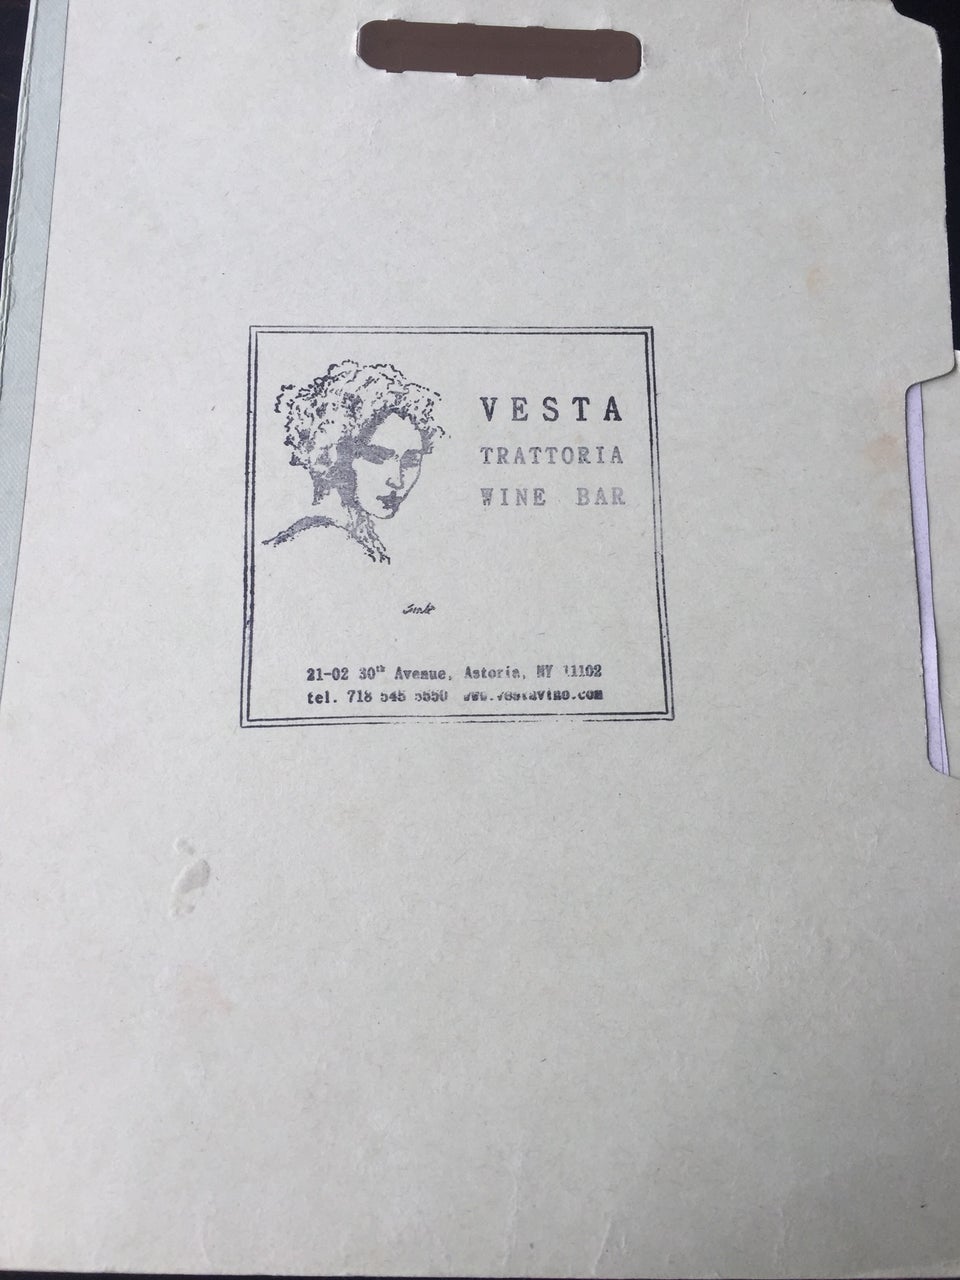 Photo of Vesta Trattoria & Wine Bar